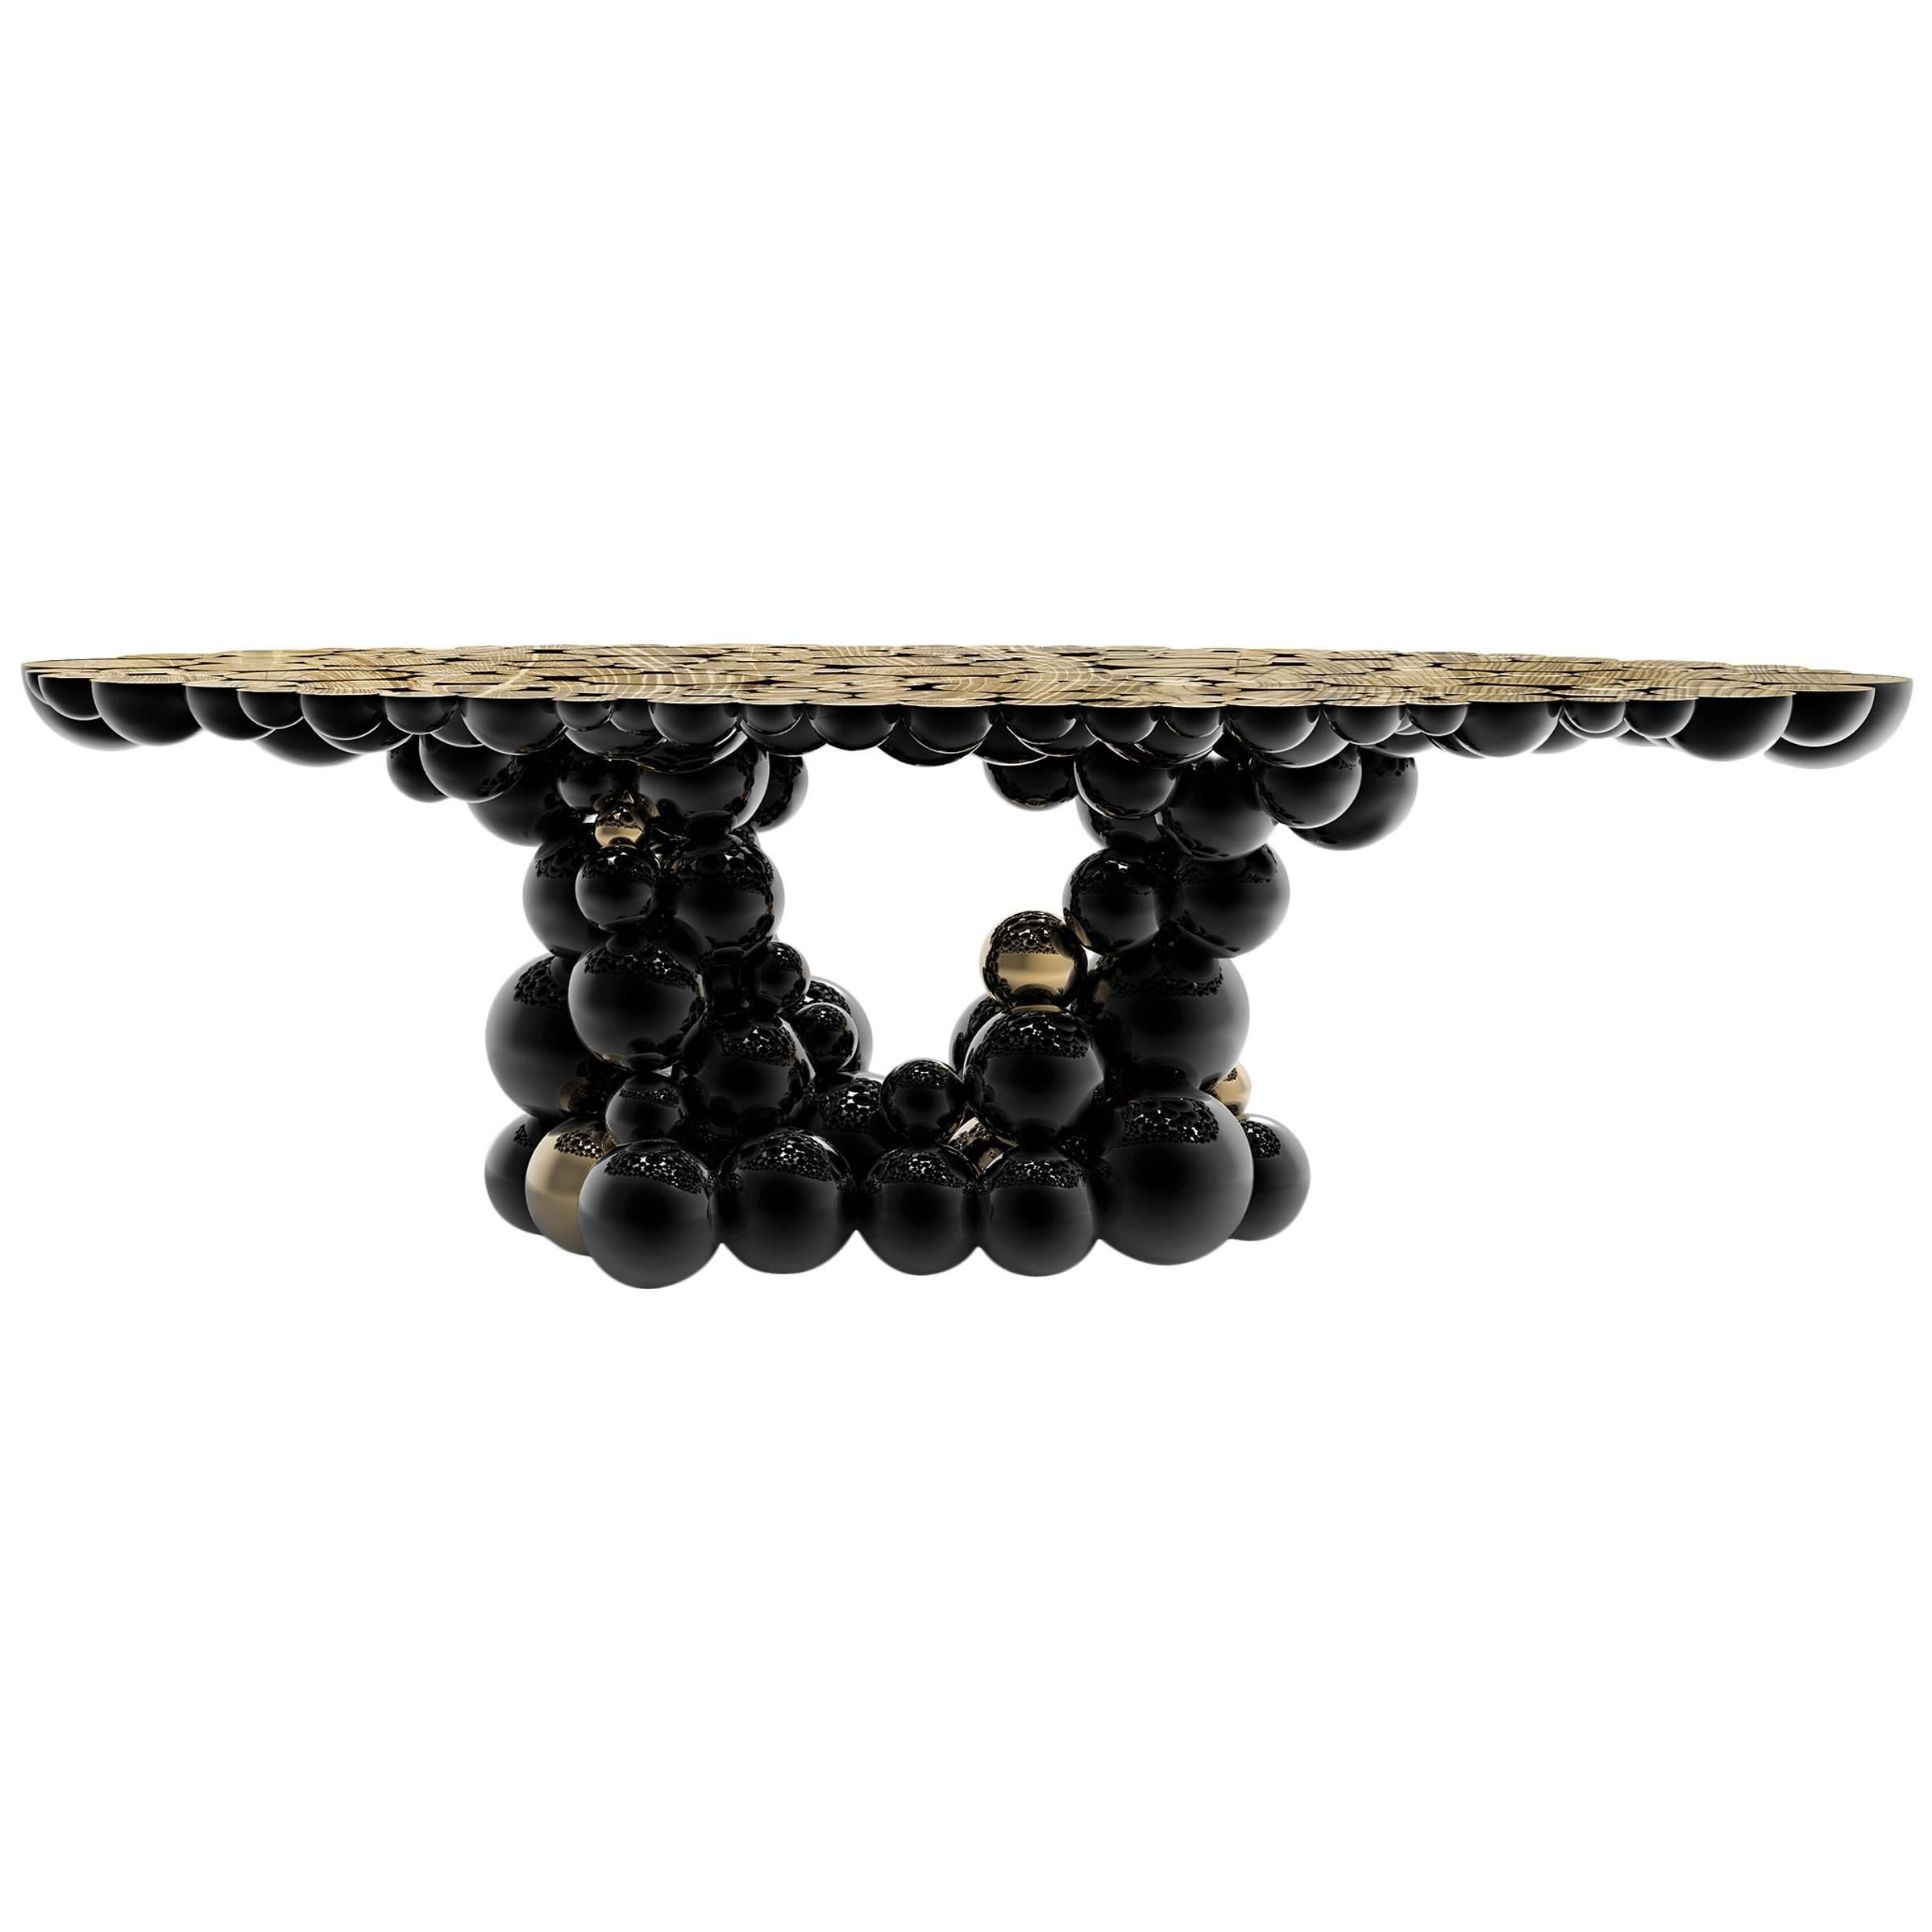 Table sphères en aluminium avec sphères noires et dorées